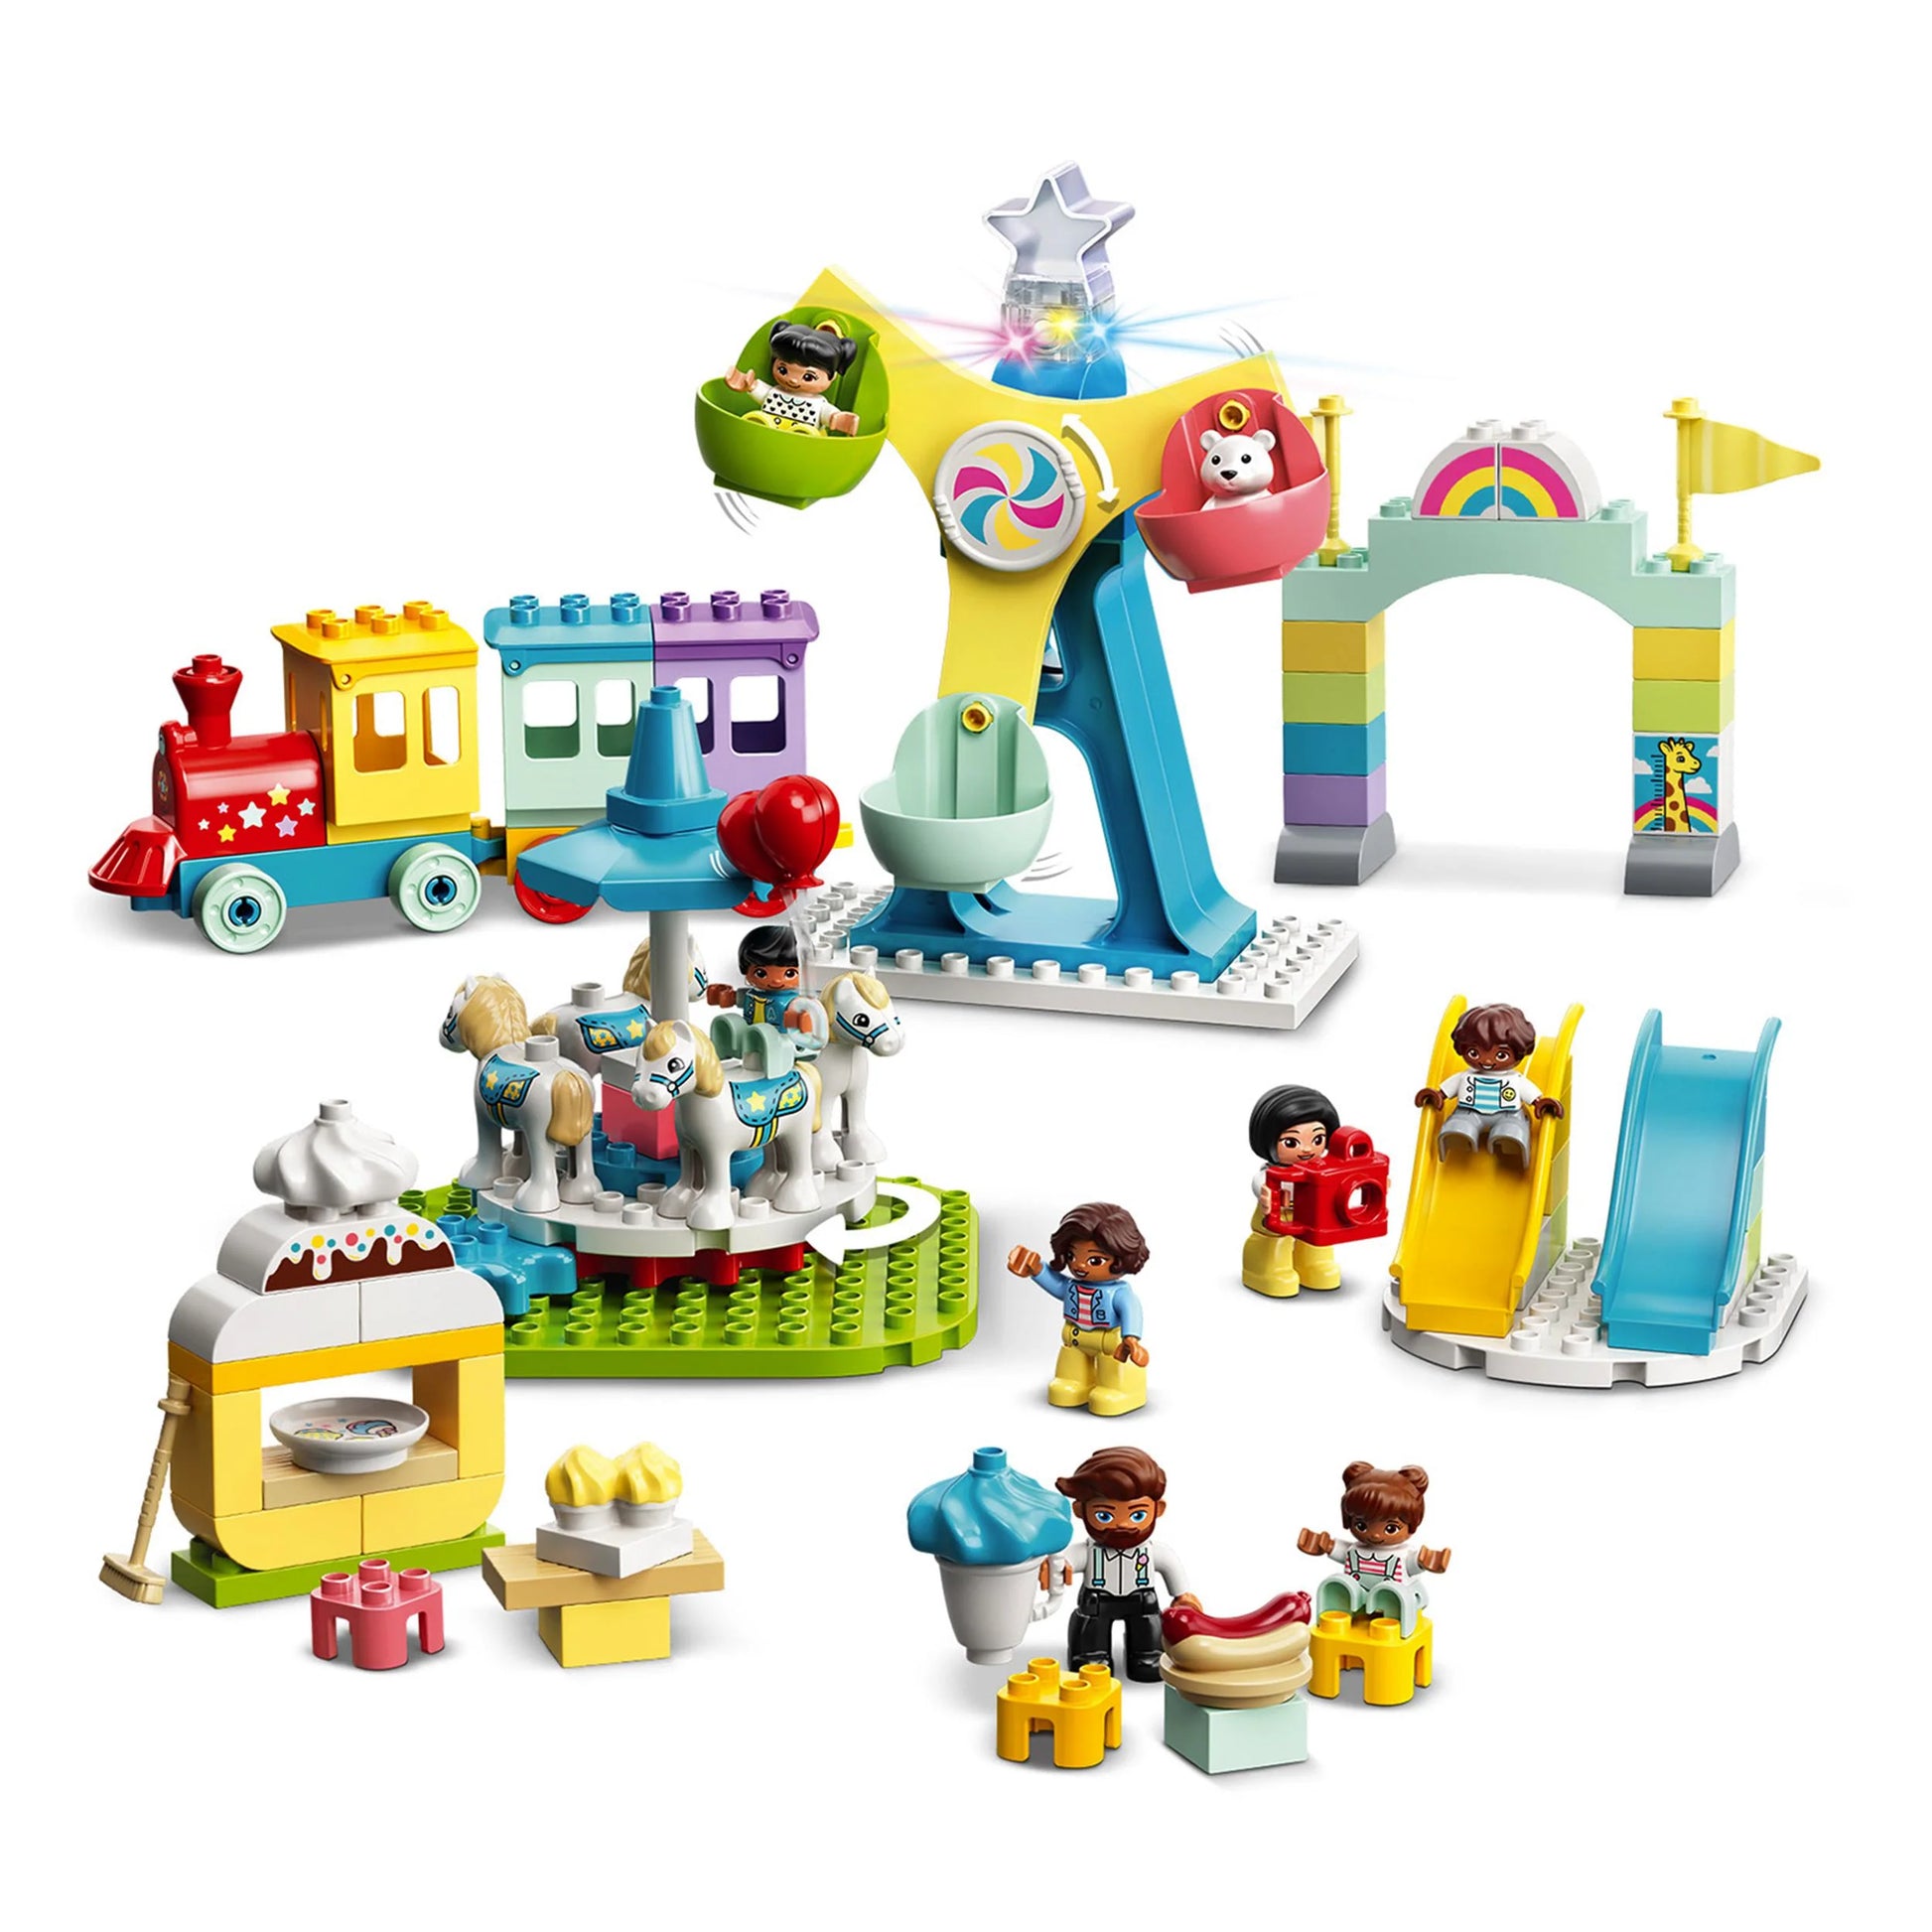 LEGO DUPLO Town Amusement Park Fairground 10956 Building Set - Featuring 7  Duplo Figures, Trains, Slides, Carousel, and a Ferris Wheel, Educational